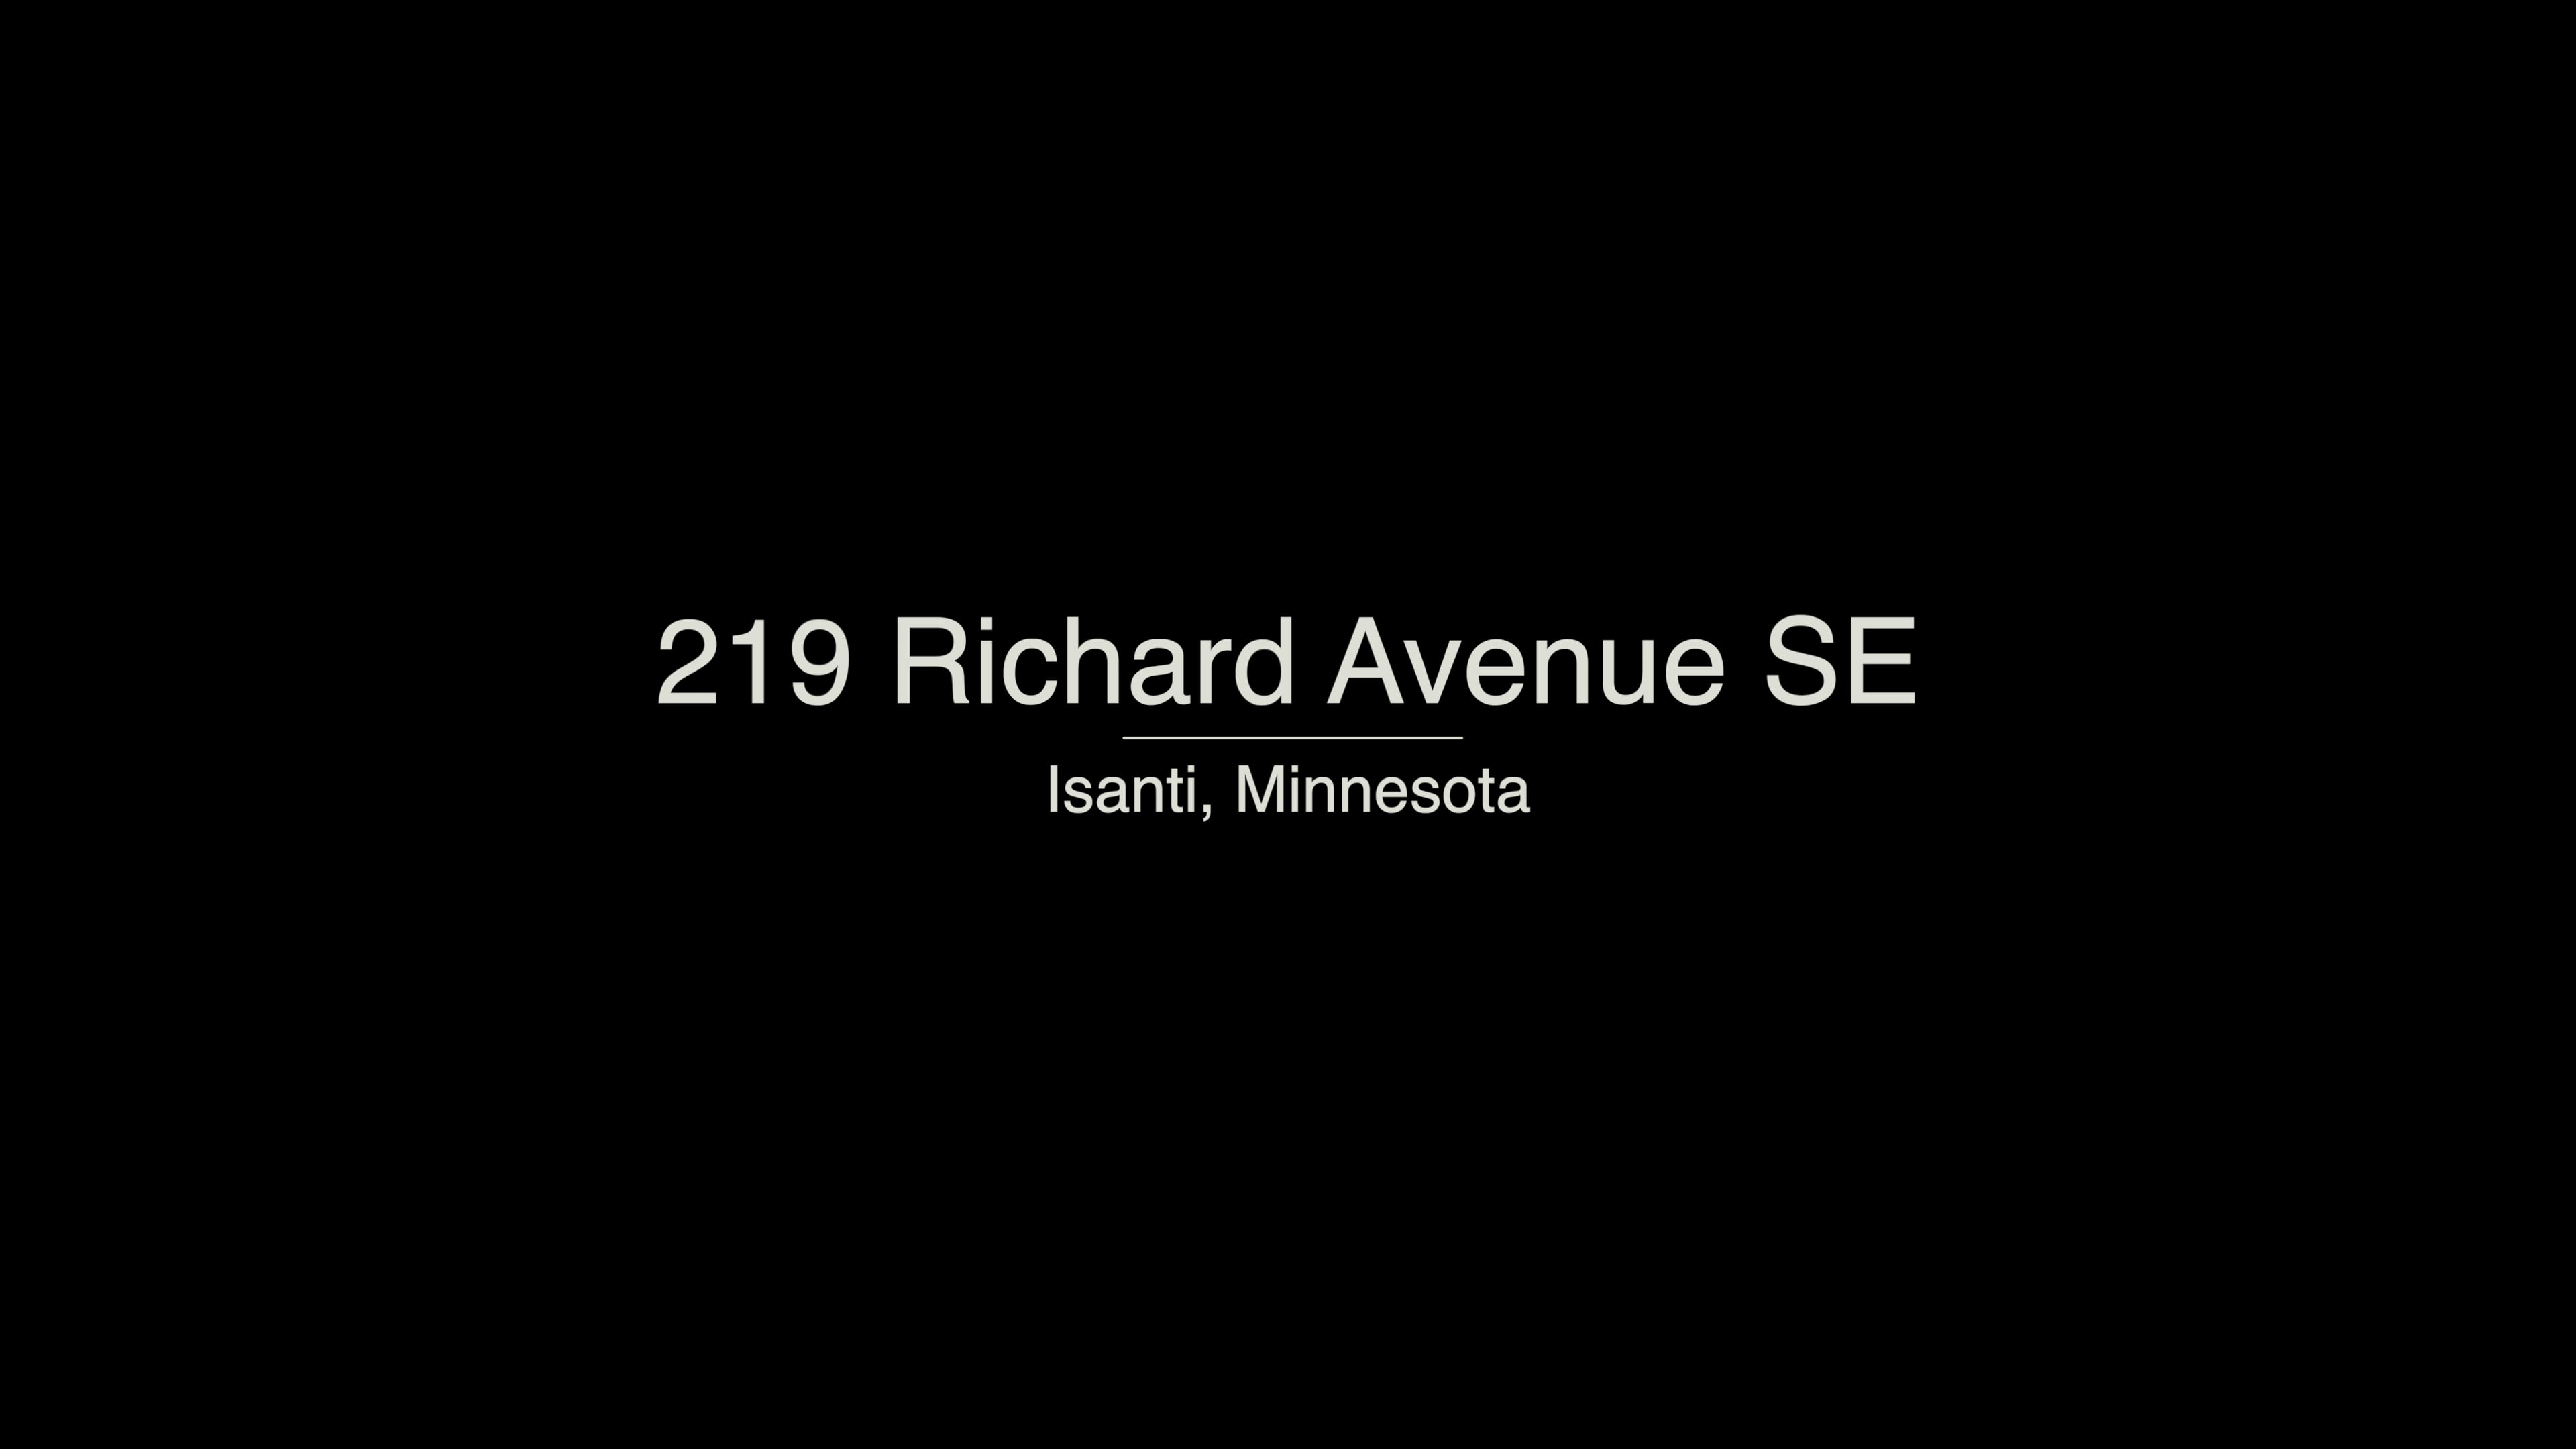 219 Richard Avenue SE, Isanti - 219 Richard Avenue SE, Isanti on Vimeo